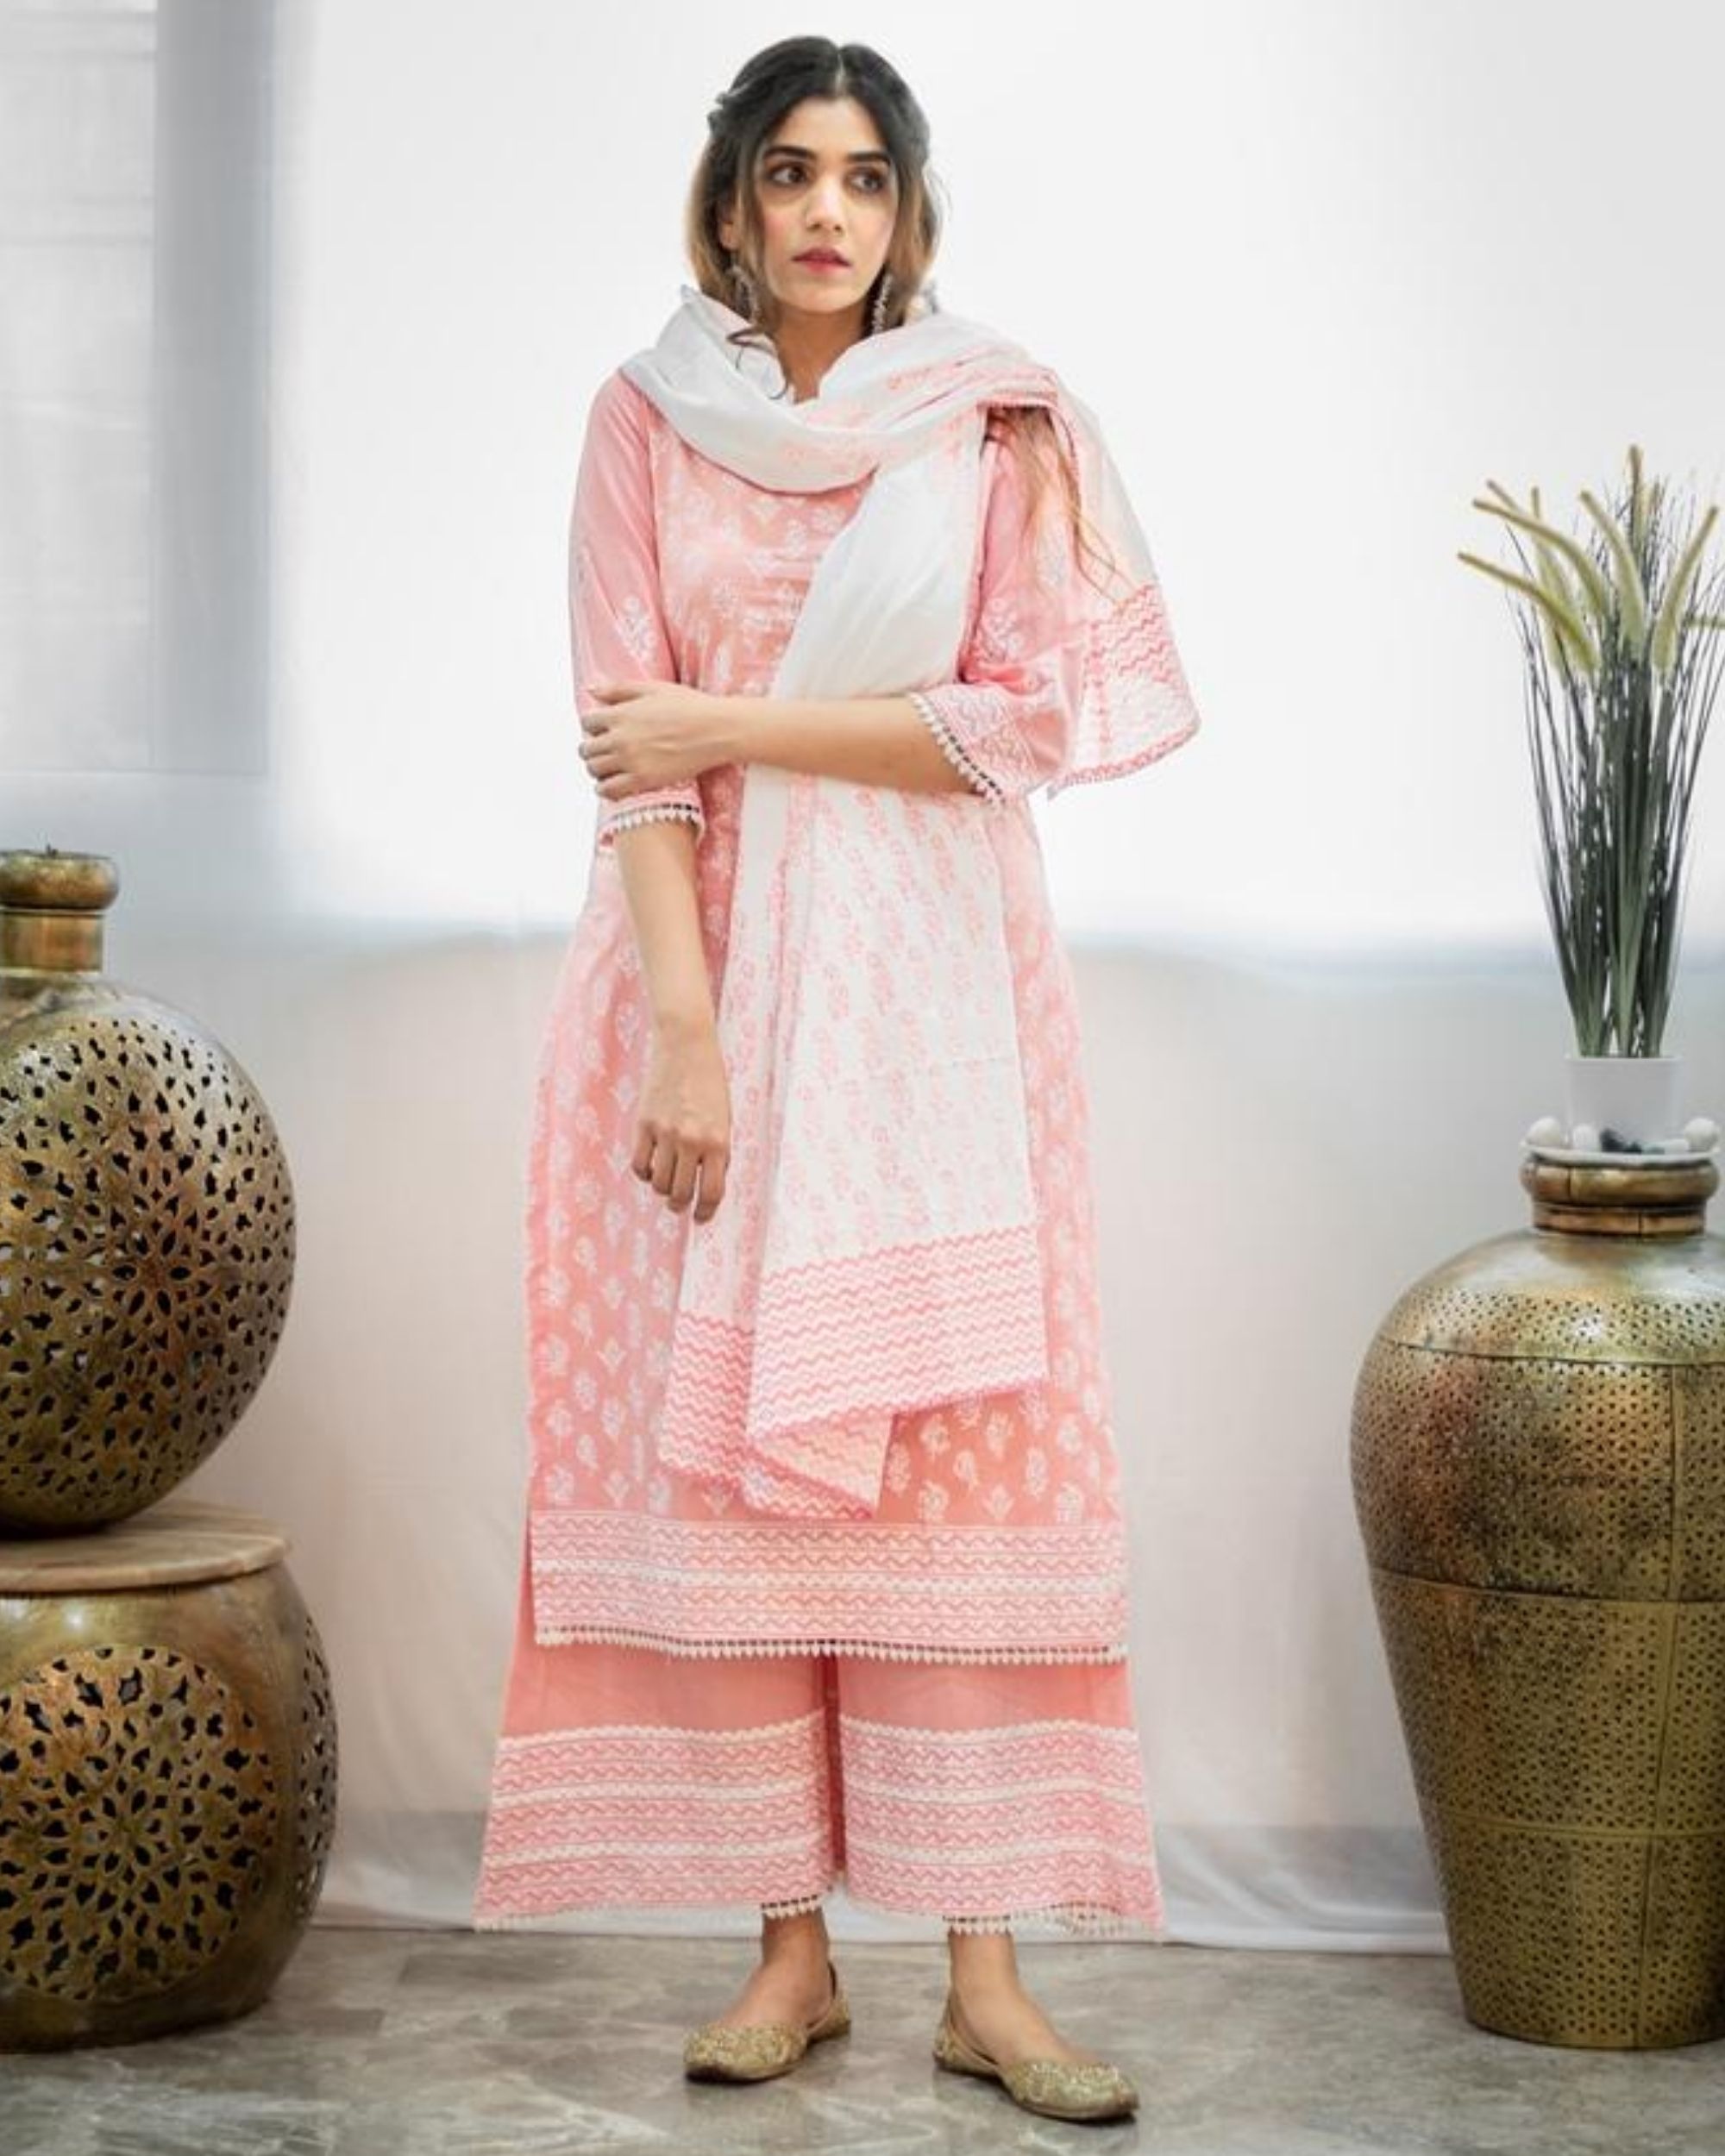 White and blush pink khari block printed dupatta by Jalpa Shah | The ...